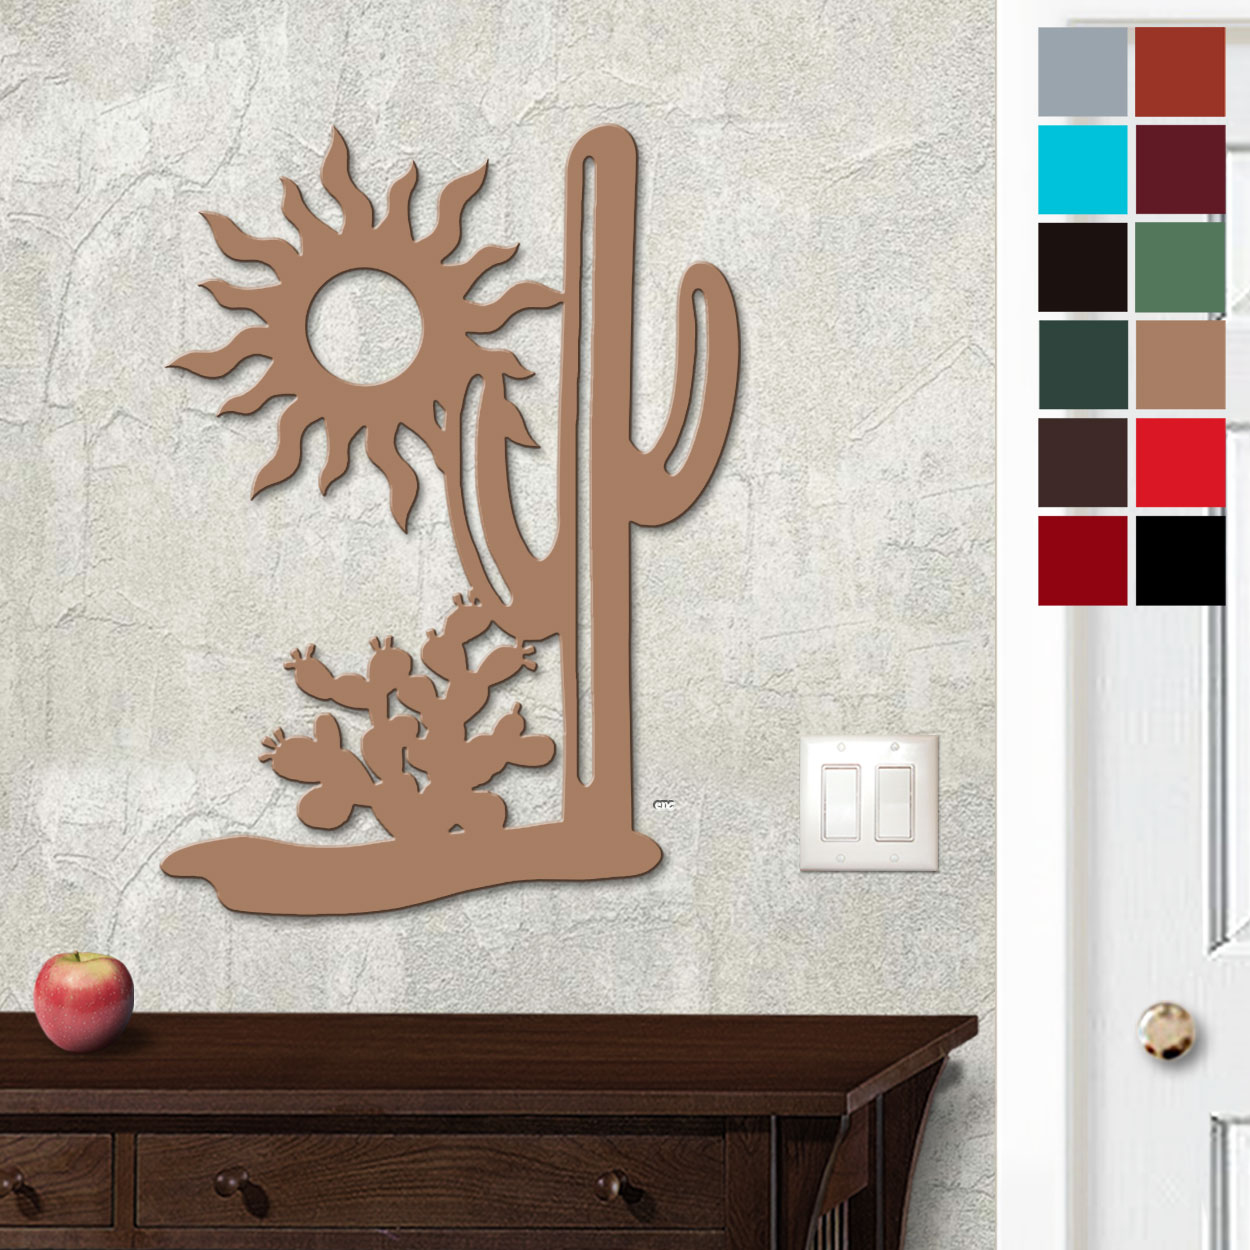 625006 - 18in or 24in Floating Metal Wall Art - Cactus Scene - Choose Color